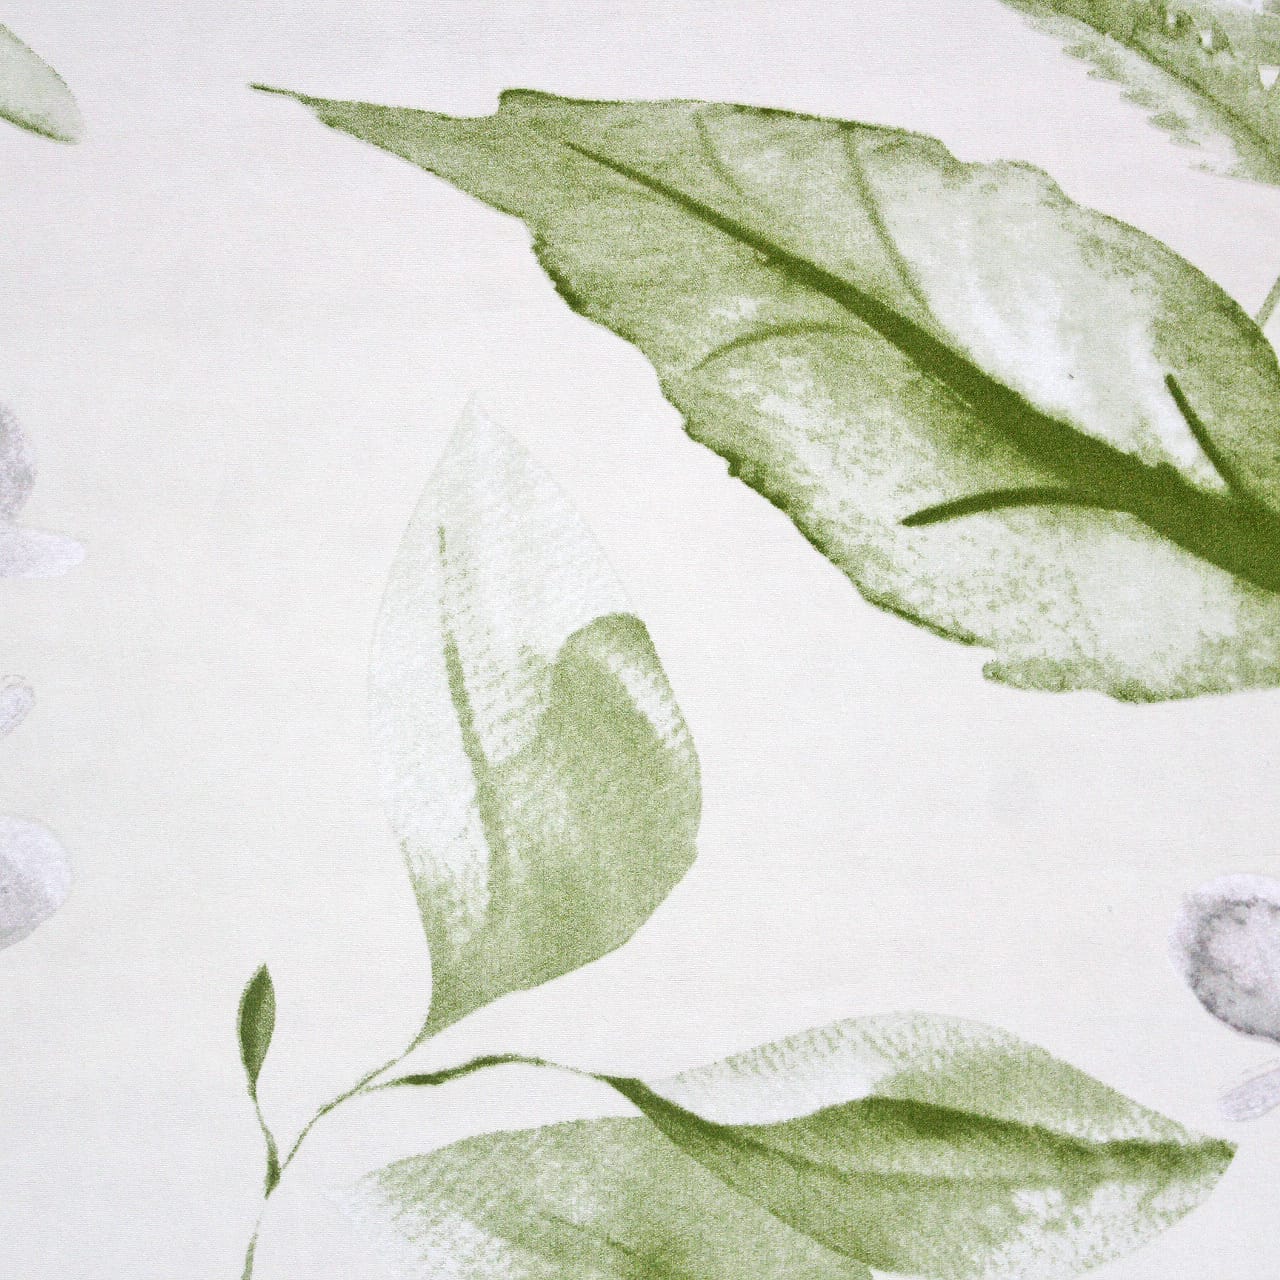 Best Microfiber Floral print Reversible AC Dohar Blanket In Cream